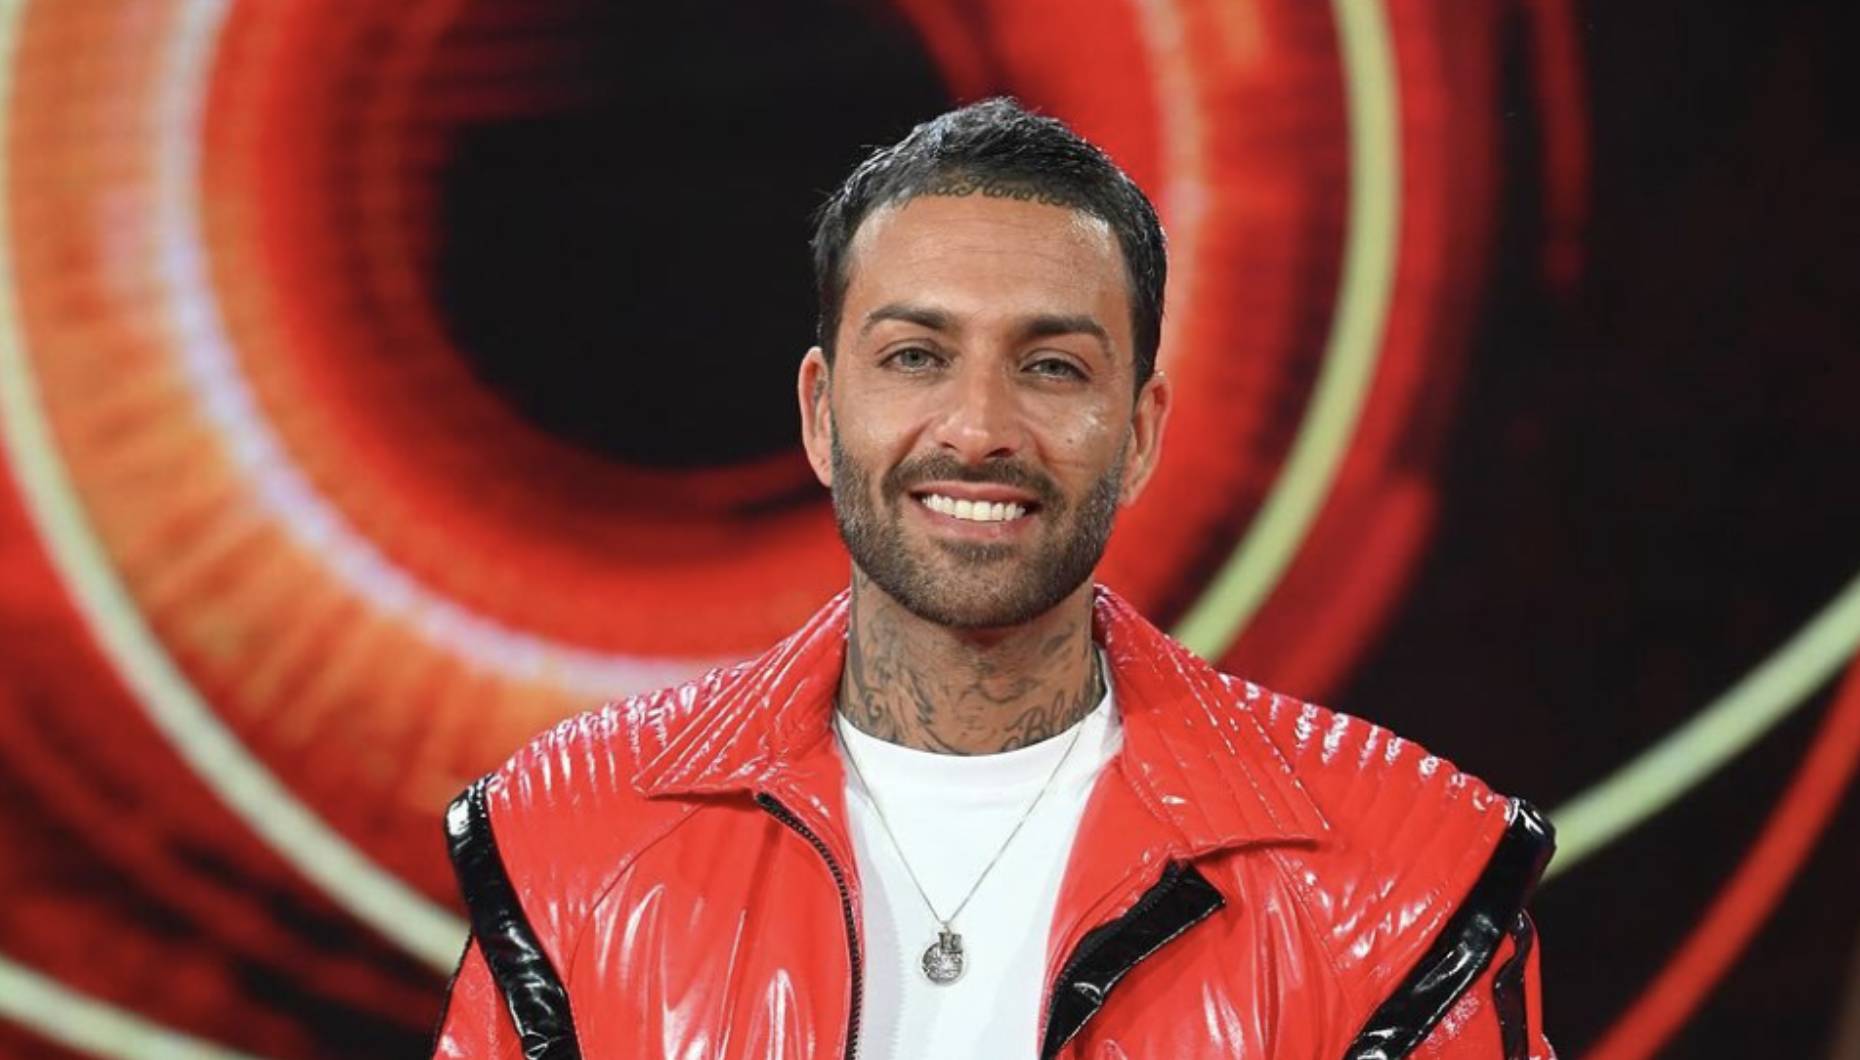 Carlos Sousa: As primeiras declarações após expulsão do "Big Brother - Desafio Final"